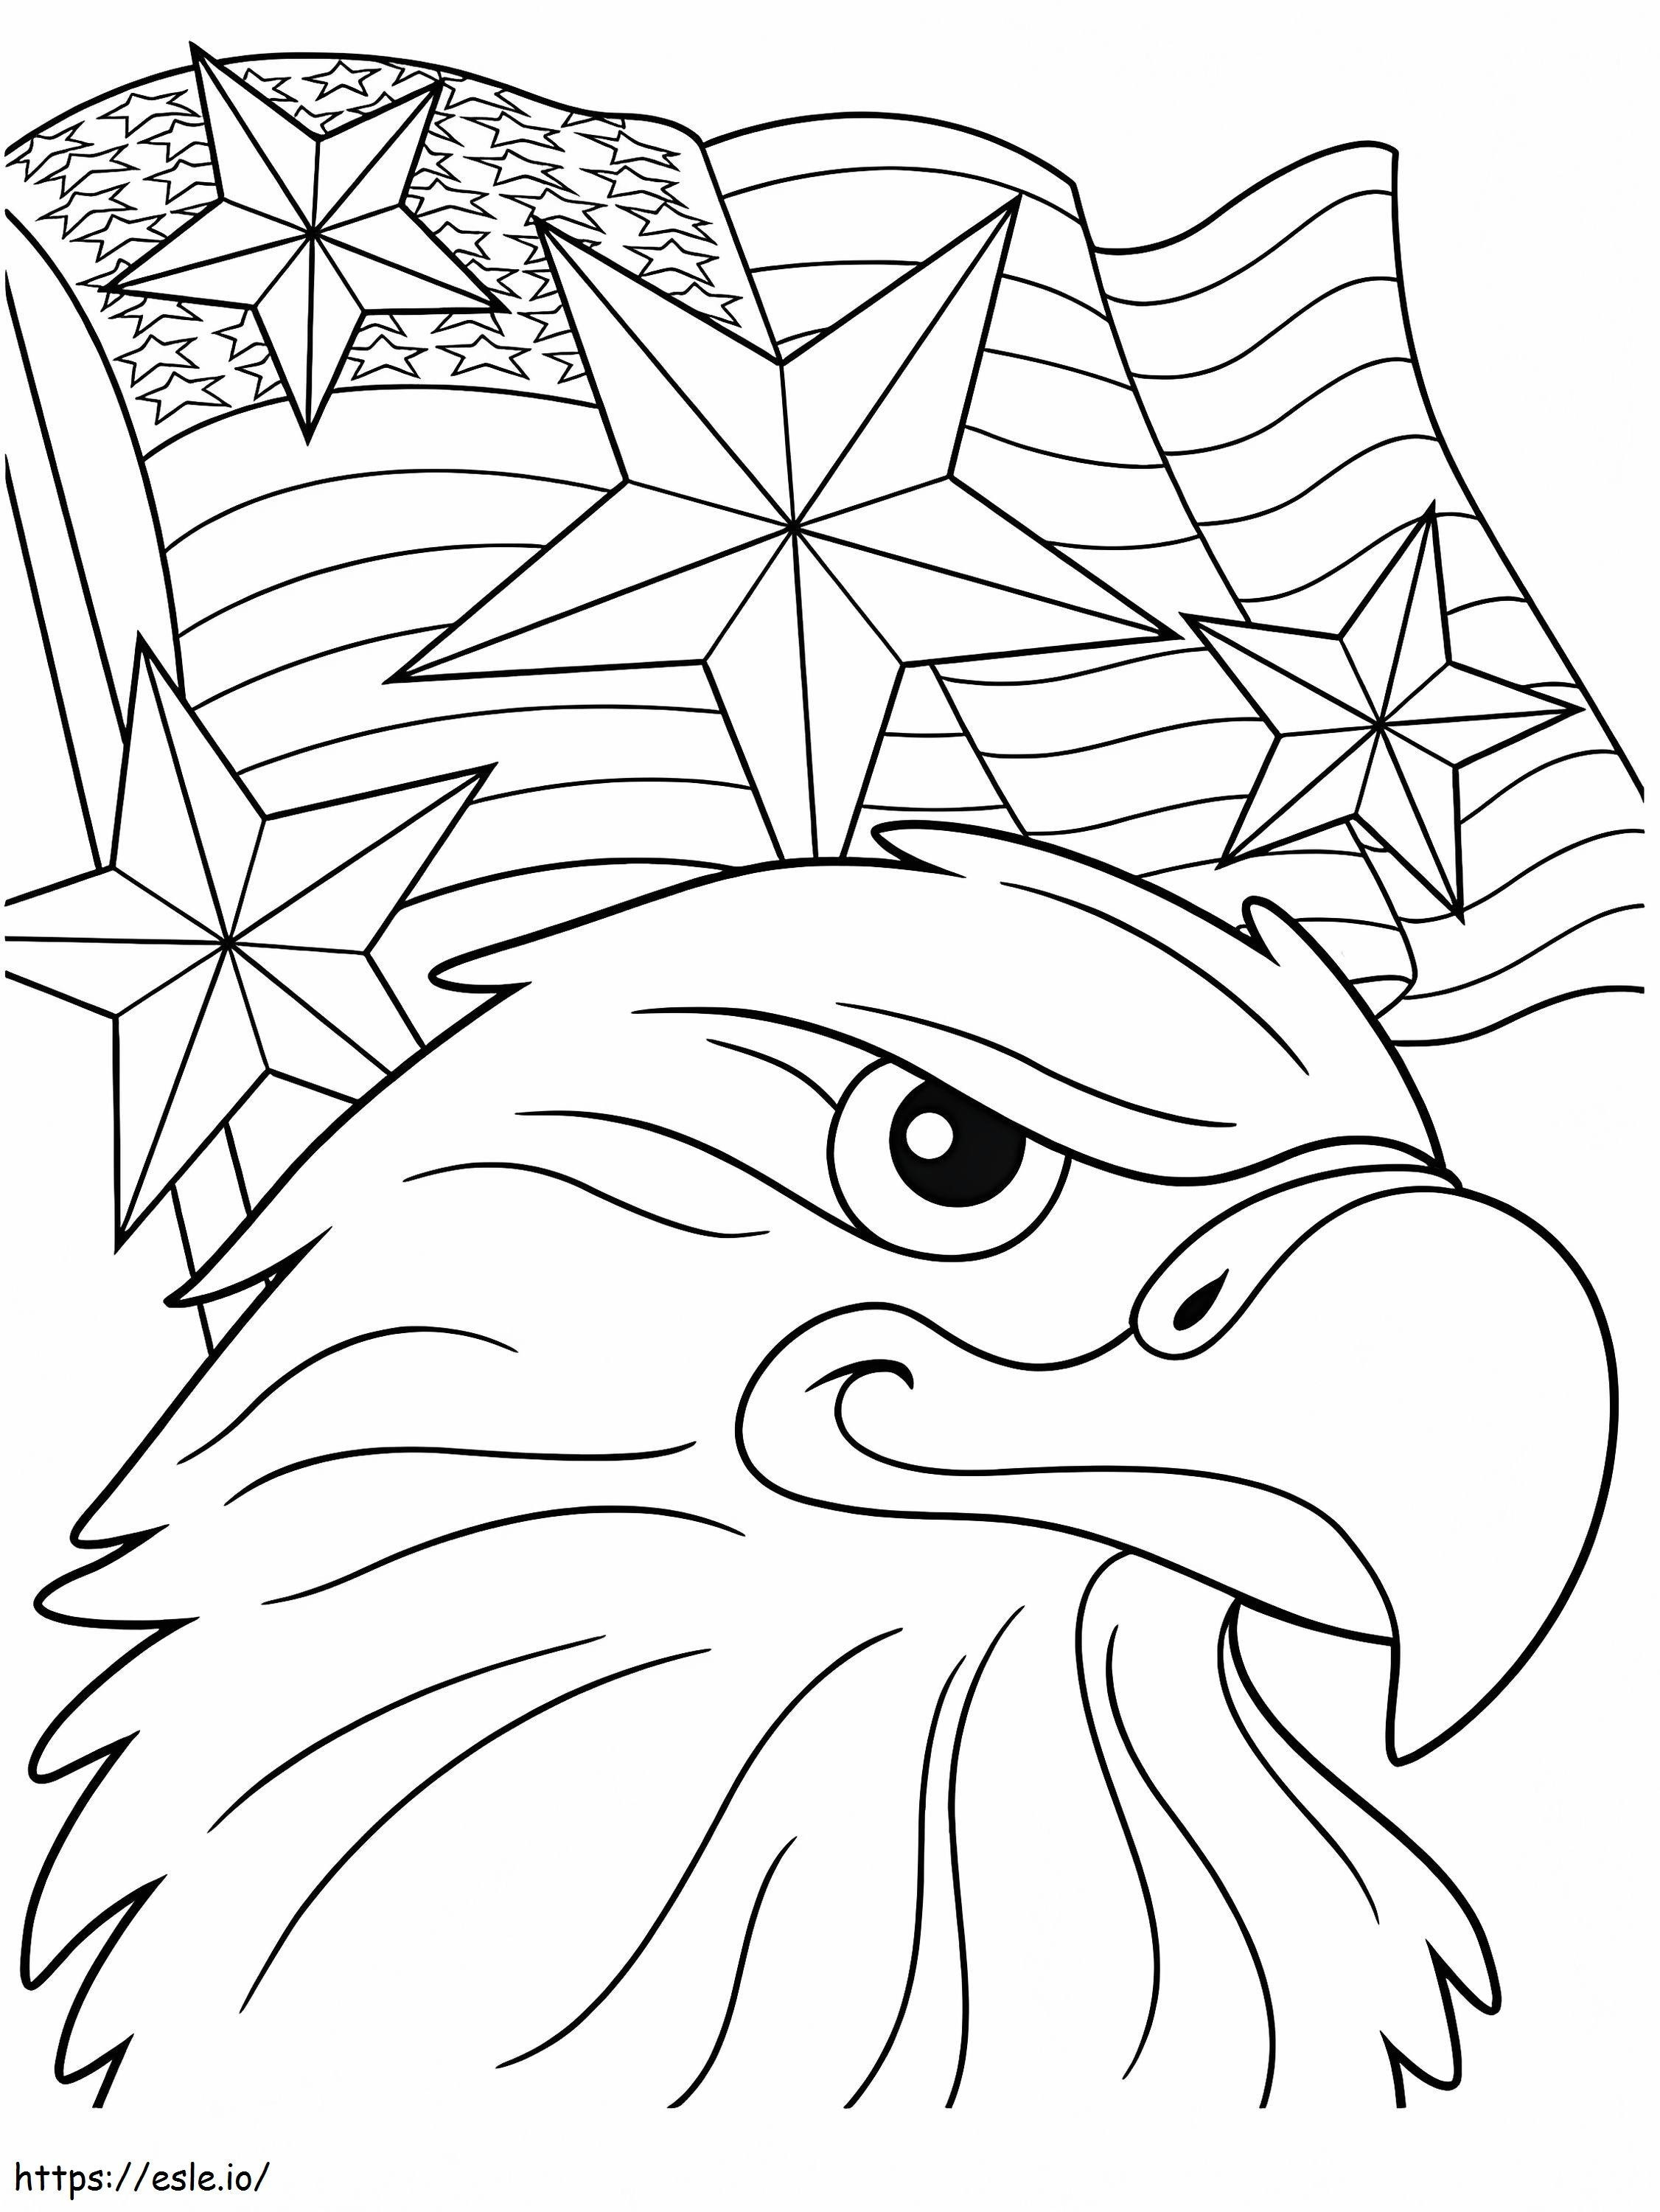 Águila con bandera para colorear